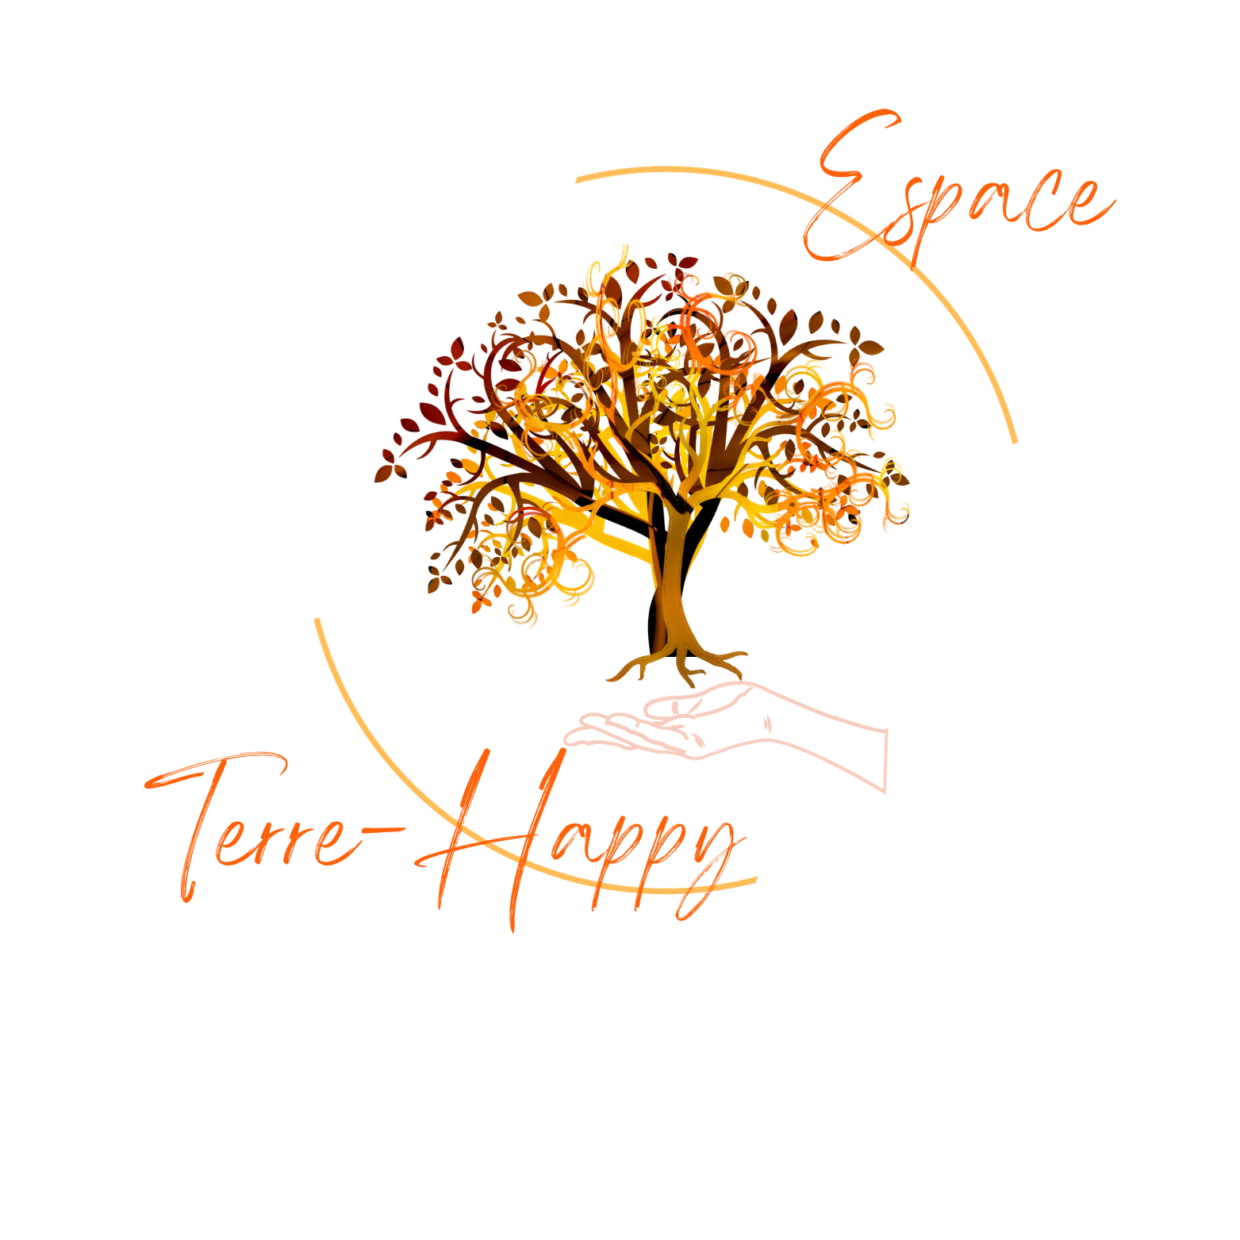 logo terre happy